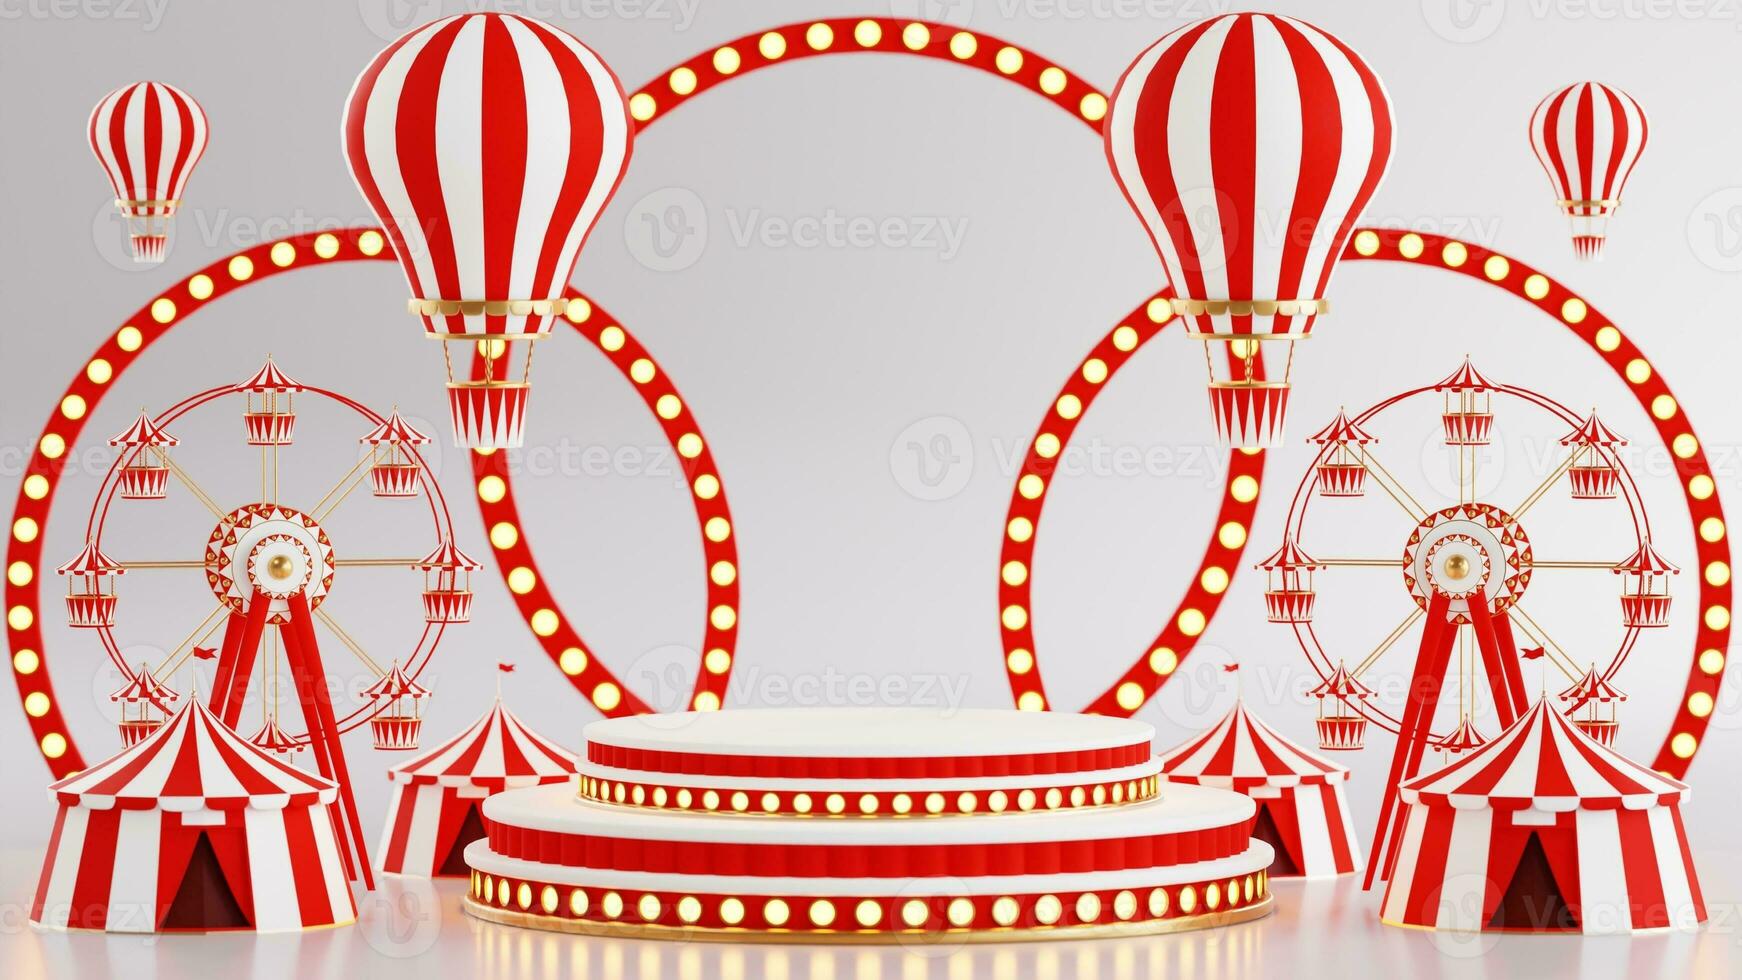 3d renderen voor amusement park, circus, carnaval eerlijk thema podium met veel ritten en winkels circus tent 3d illustratie foto